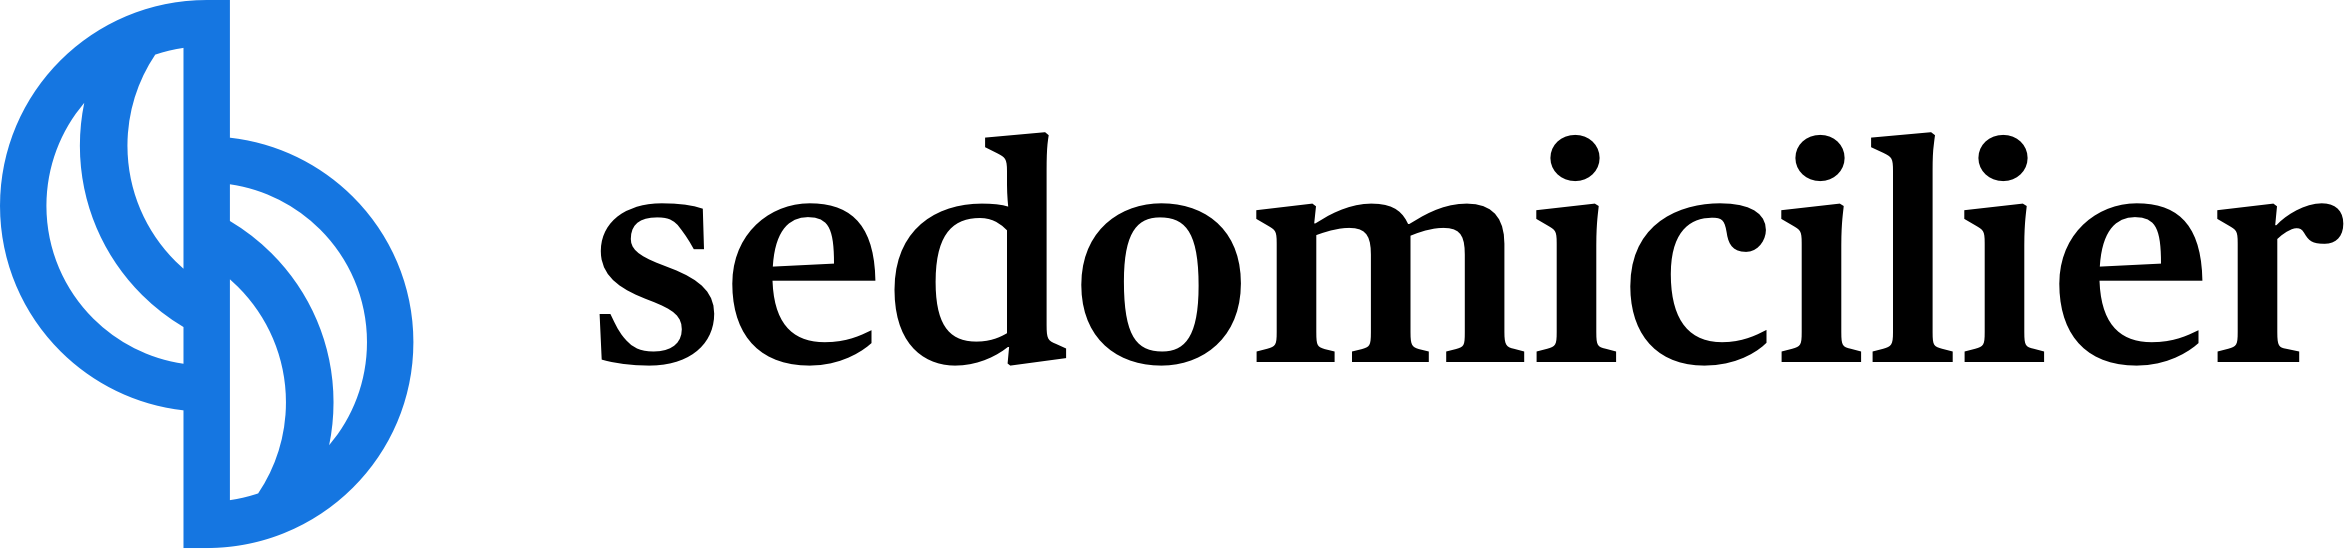 sedomicilier logo 